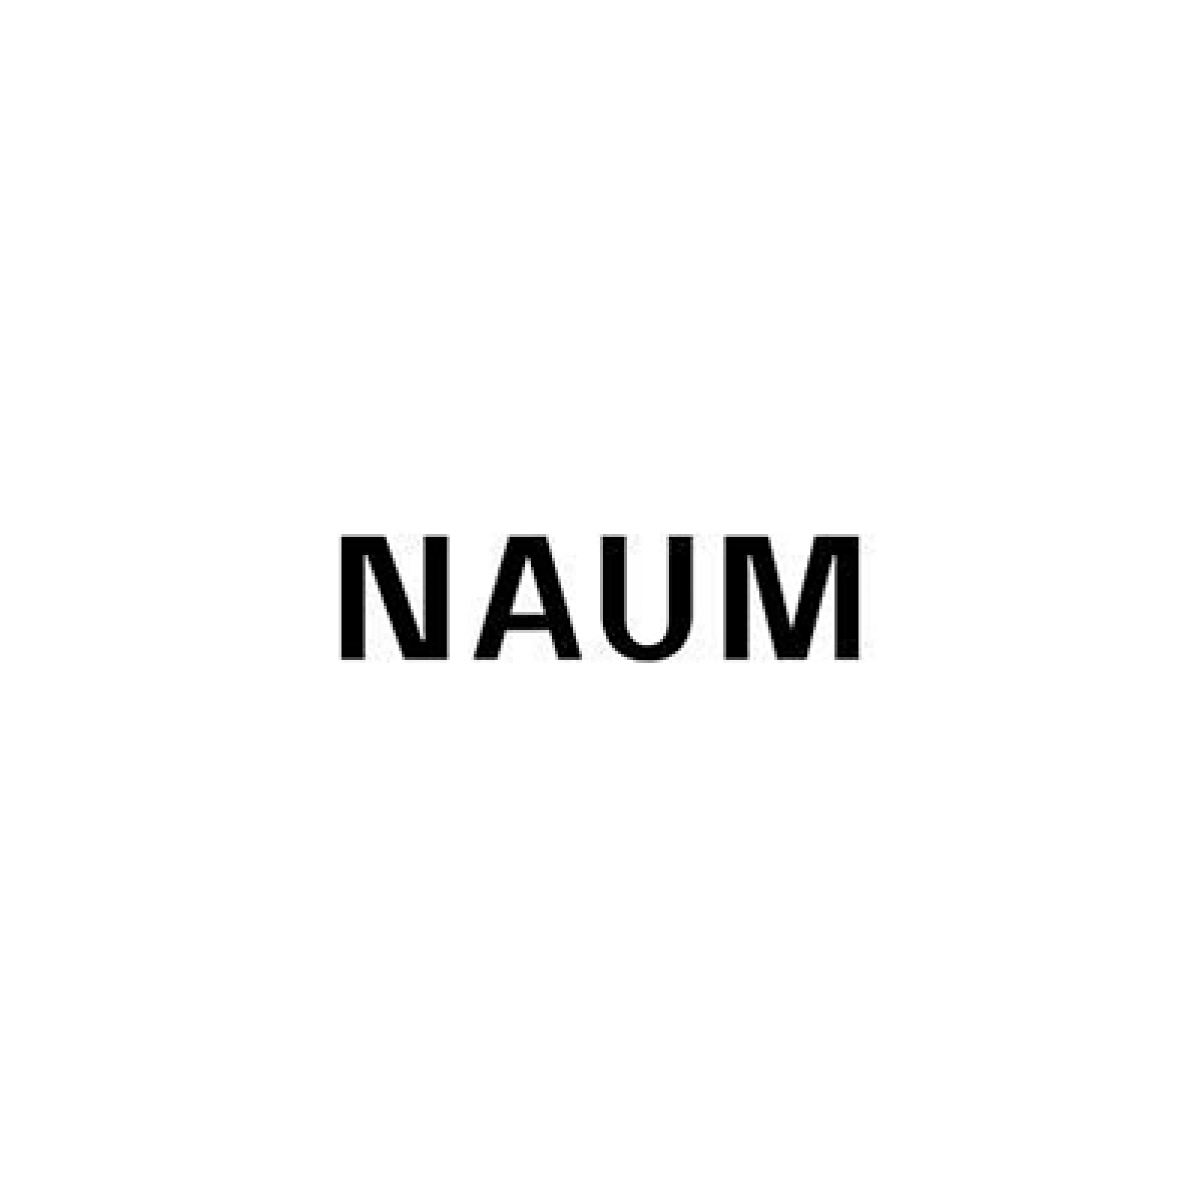 Naum